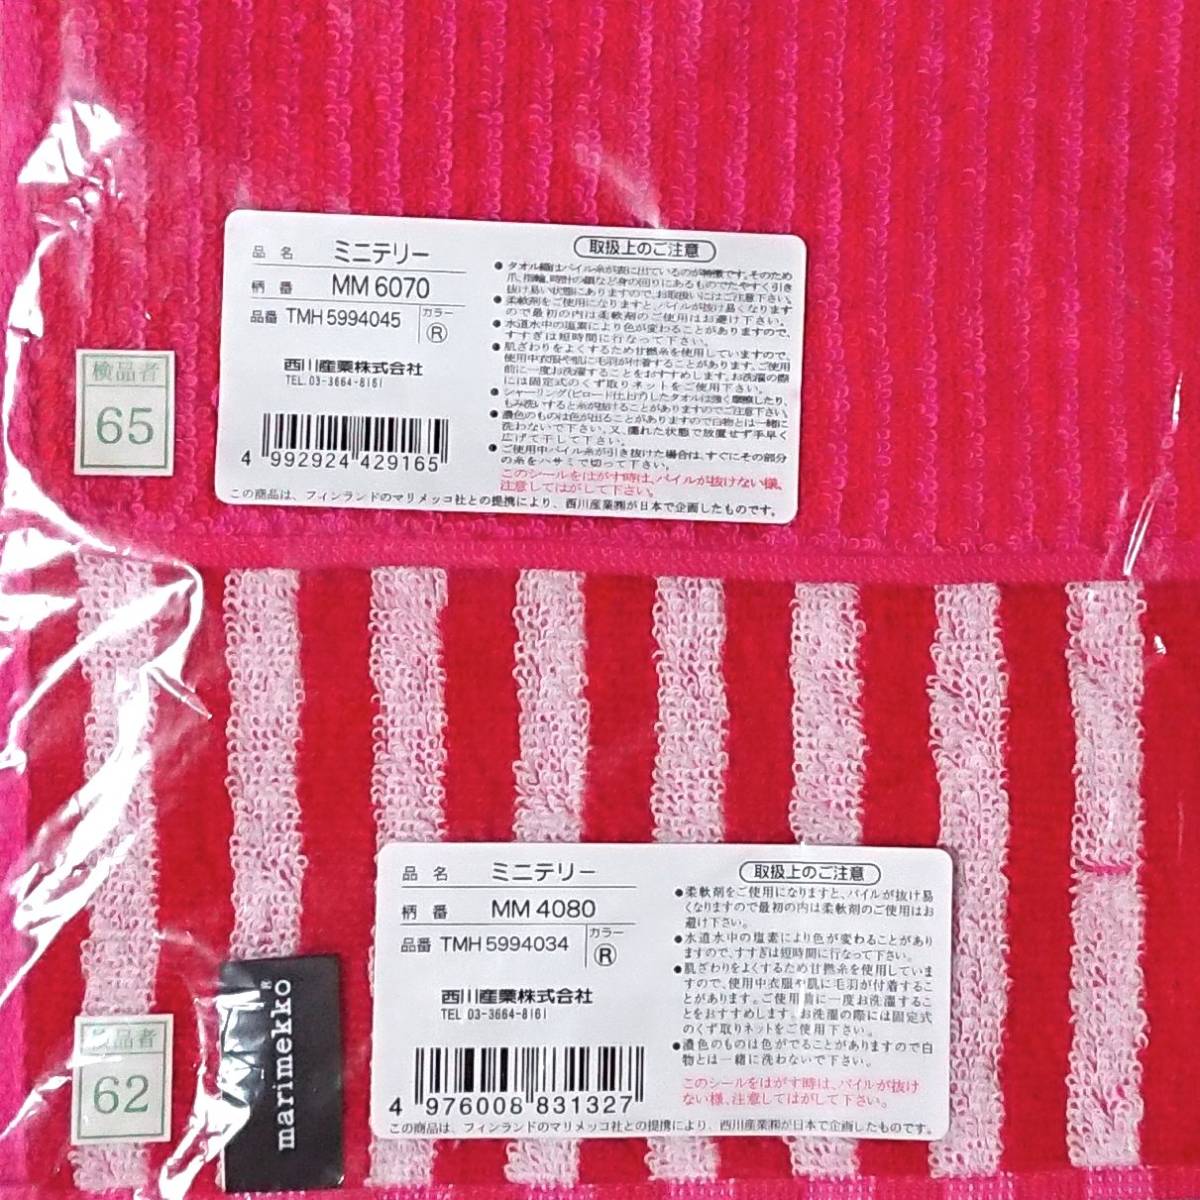  Marimekko Mini ta Horta oru носовой платок полотенце для рук 2 шт. комплект красный оттенок красного полоса marimekko новый товар не использовался 